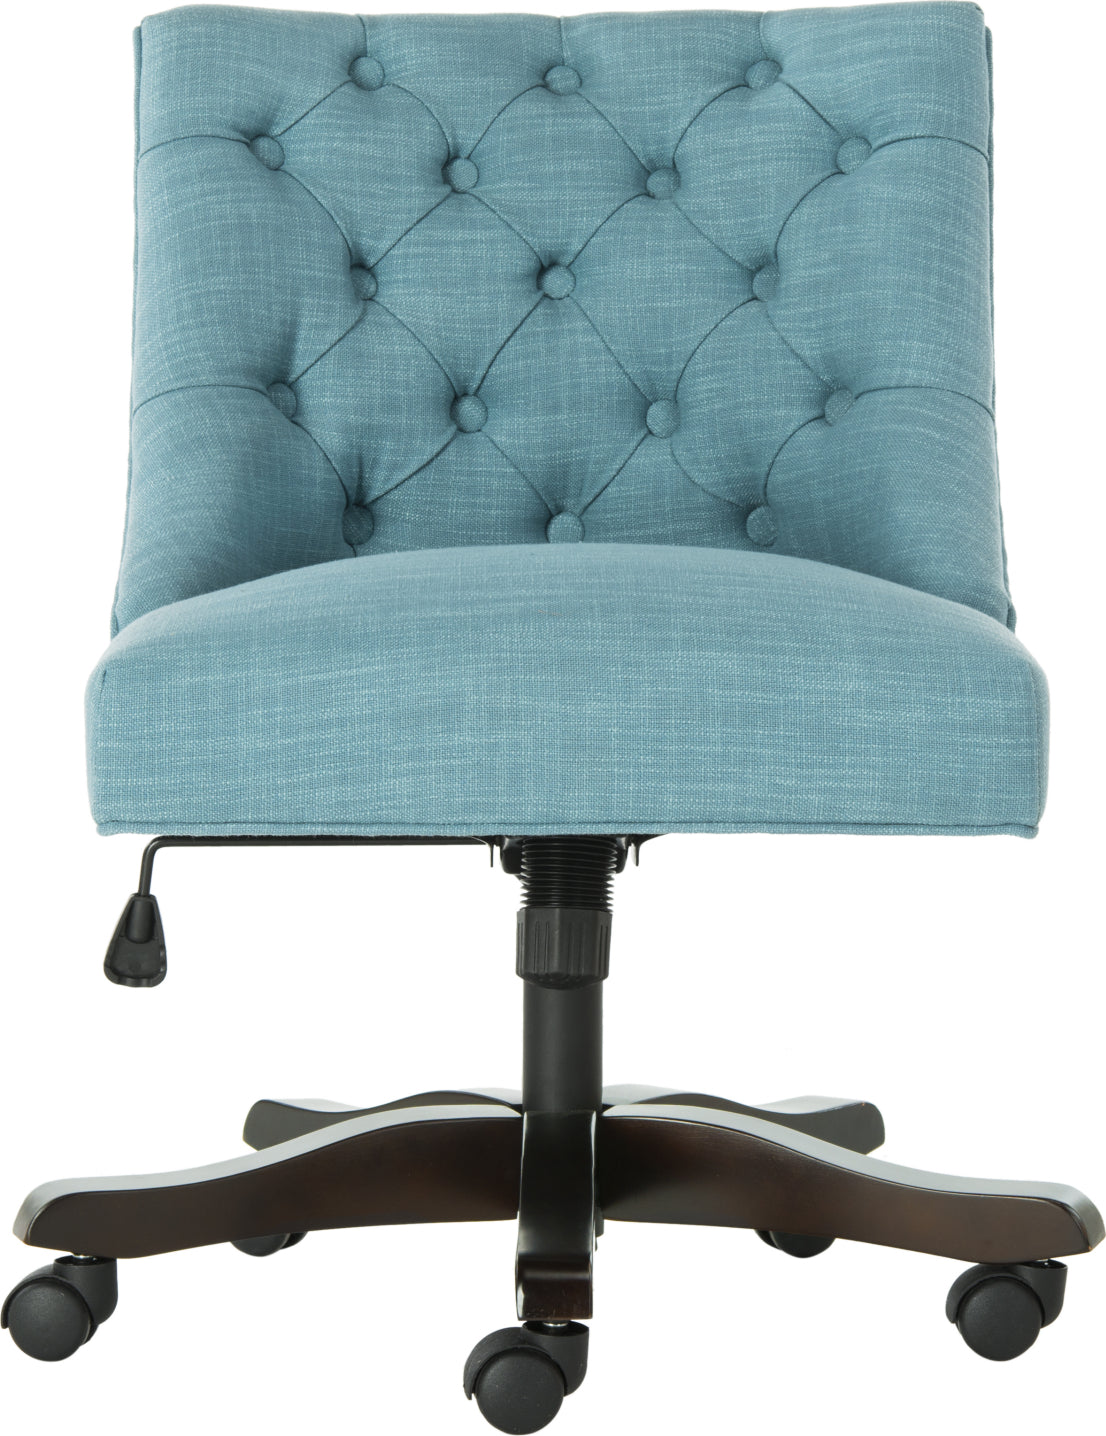 Safavieh Soho Tufted Linen Swivel Desk Chair Light Blue Furniture main image